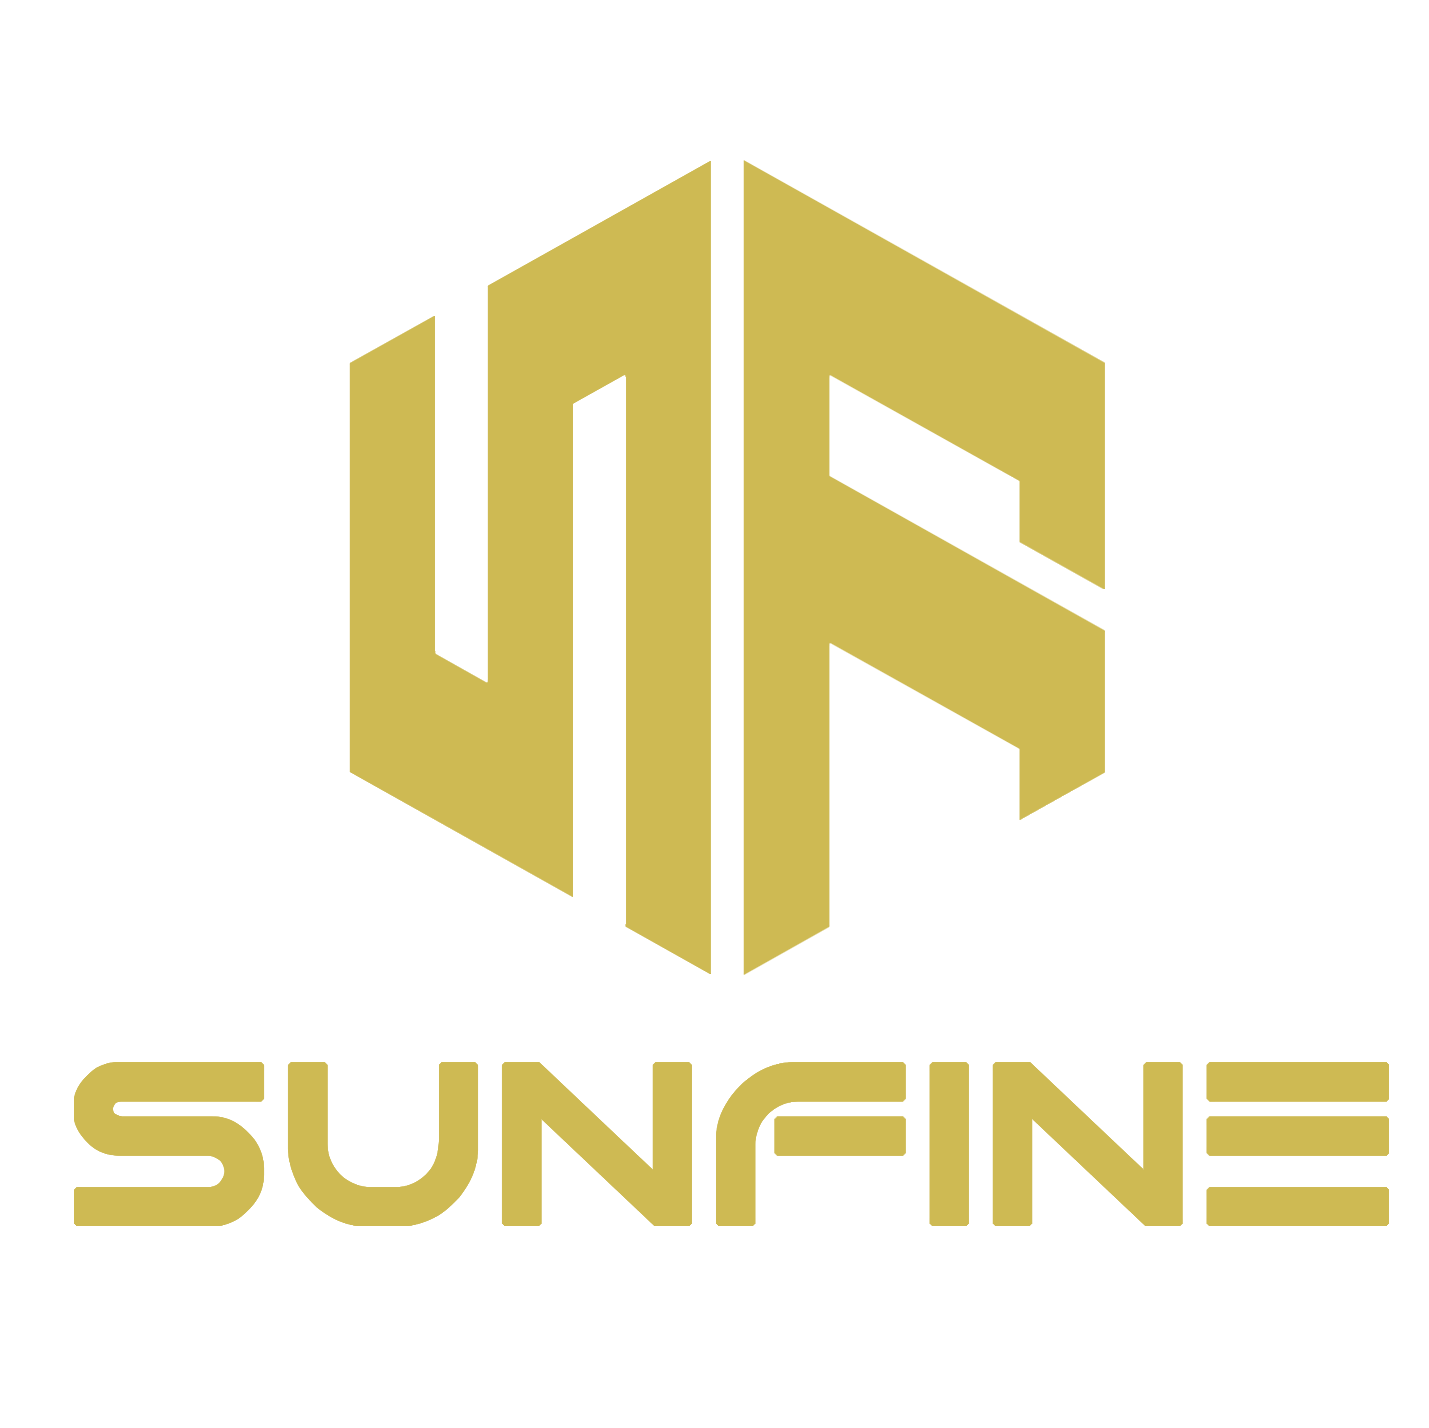 Sunfine Architect & Construction Co.,Ltd.